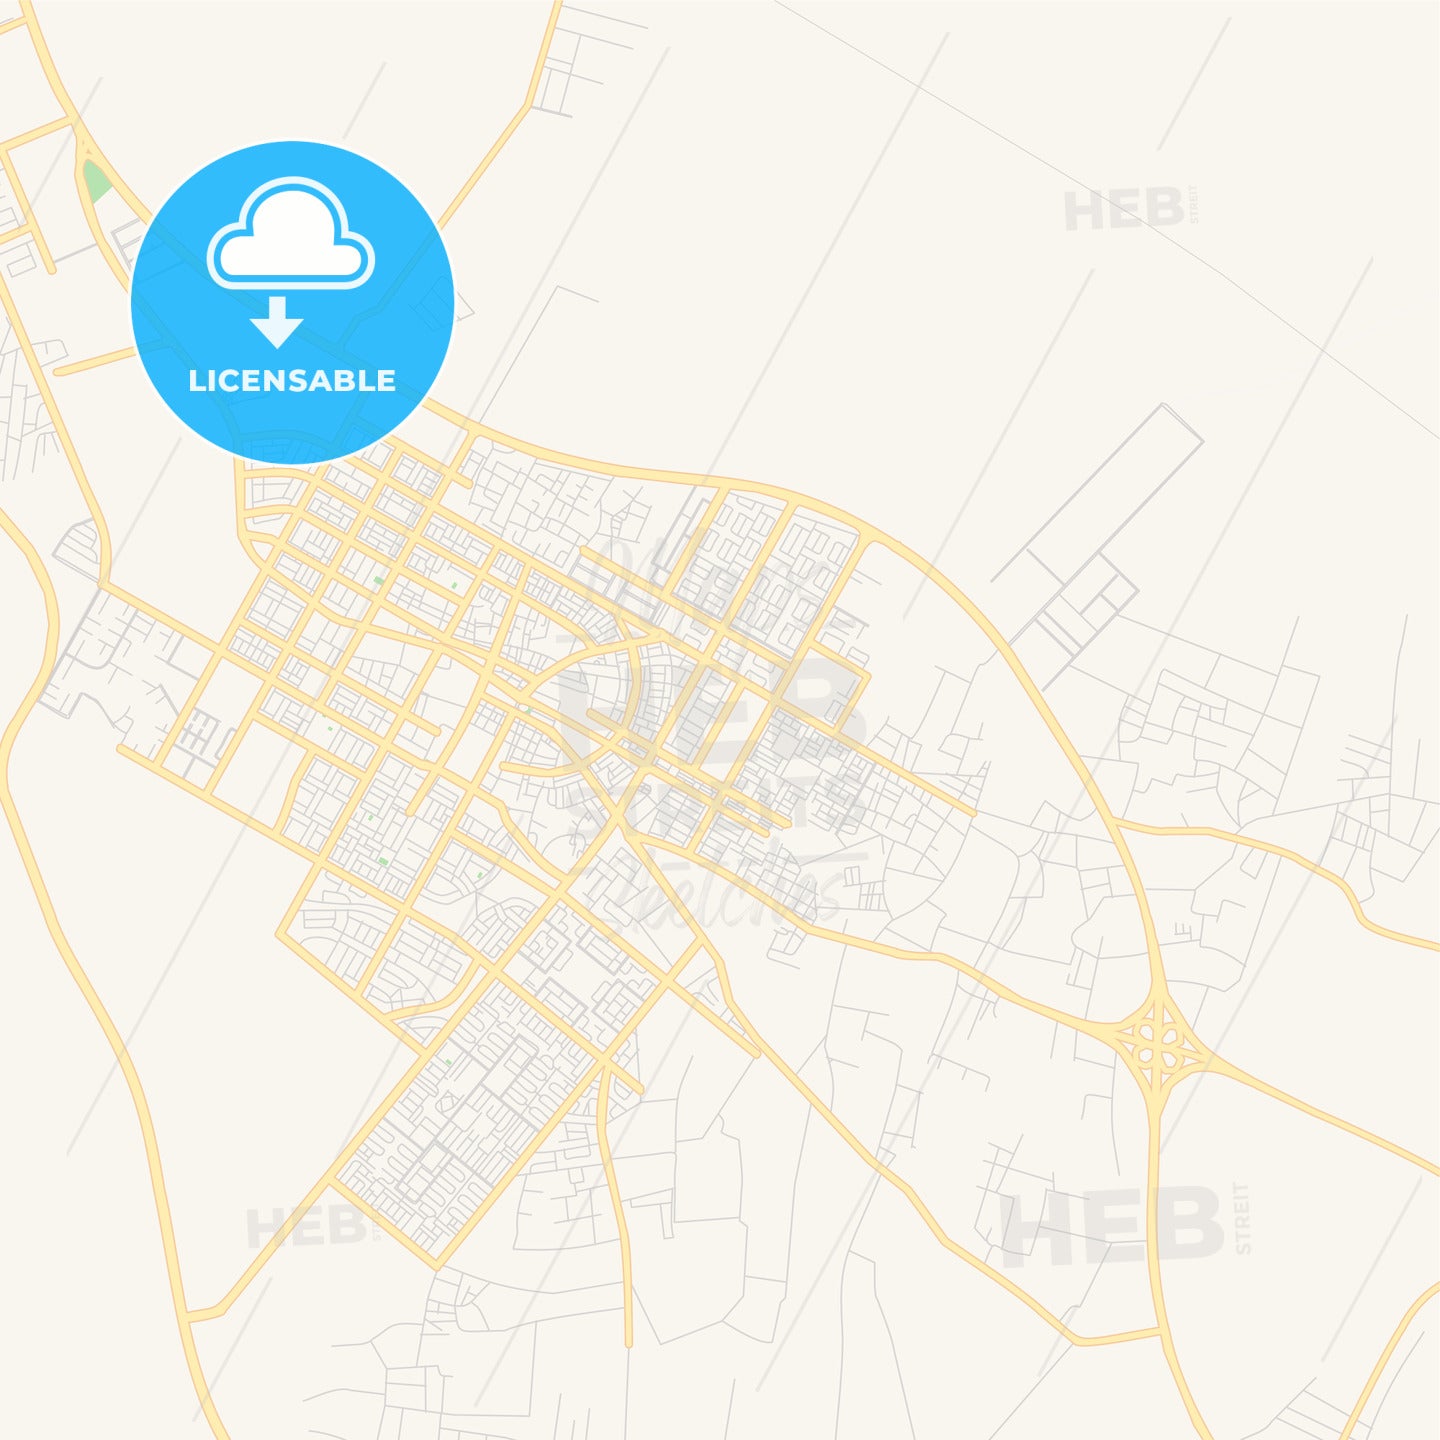 Printable street map of Gurayat, Saudi Arabia